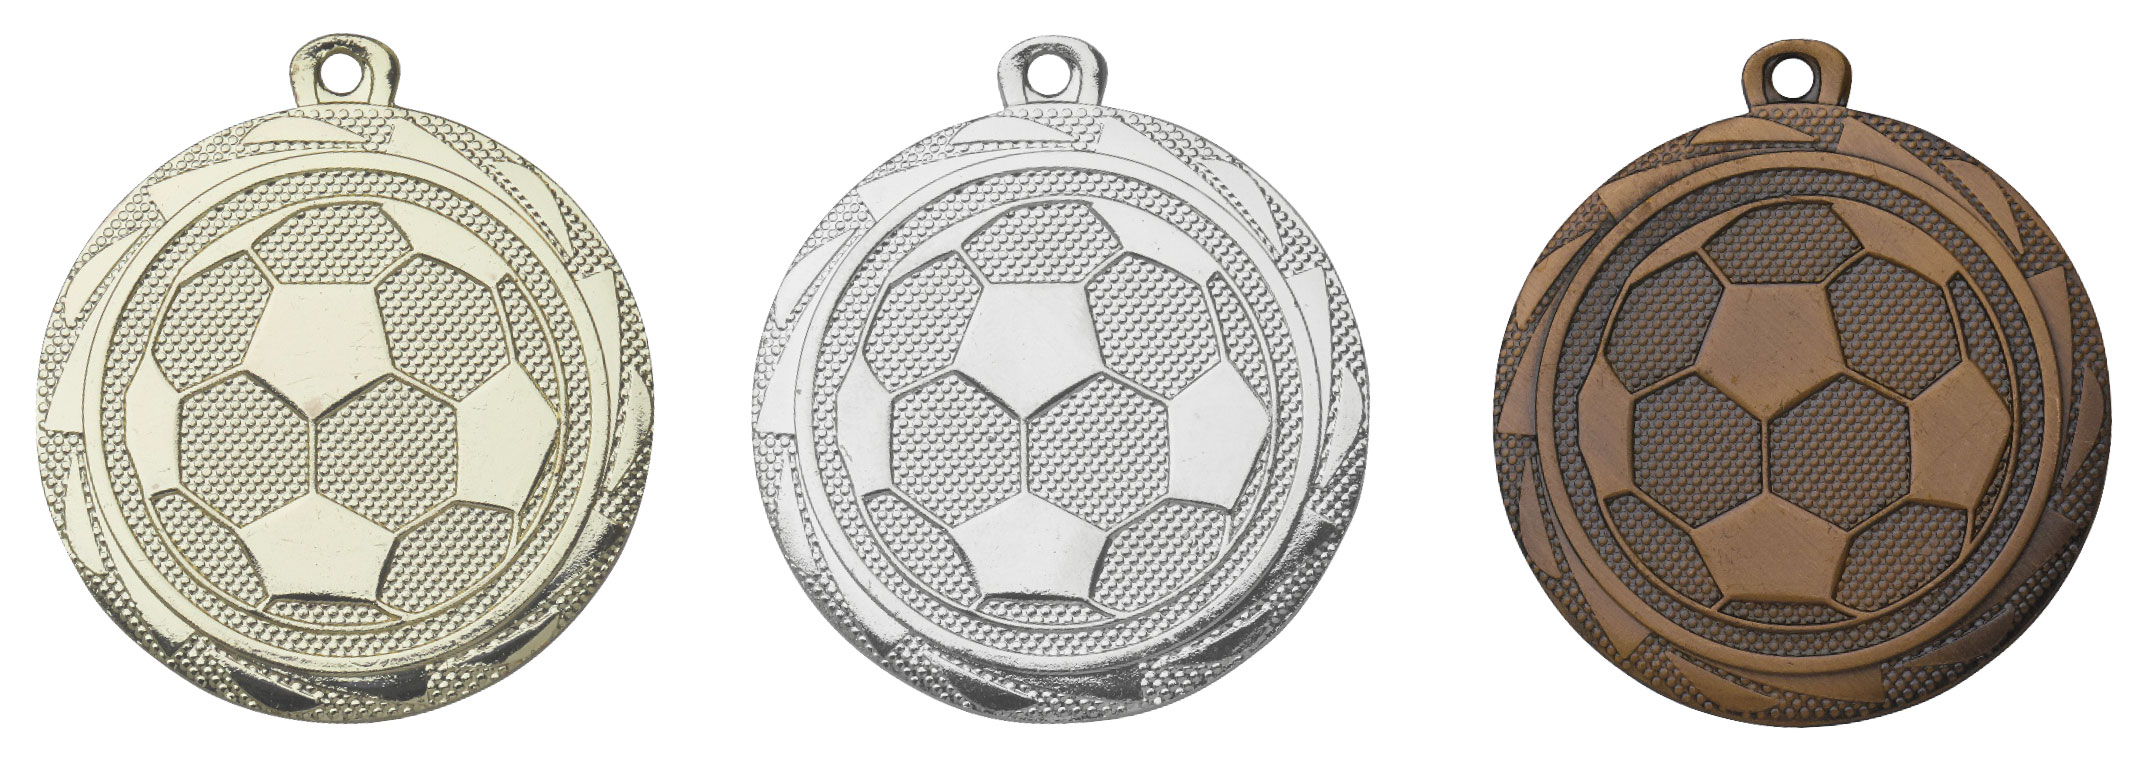 Medaille "Fußball" mit Kranz